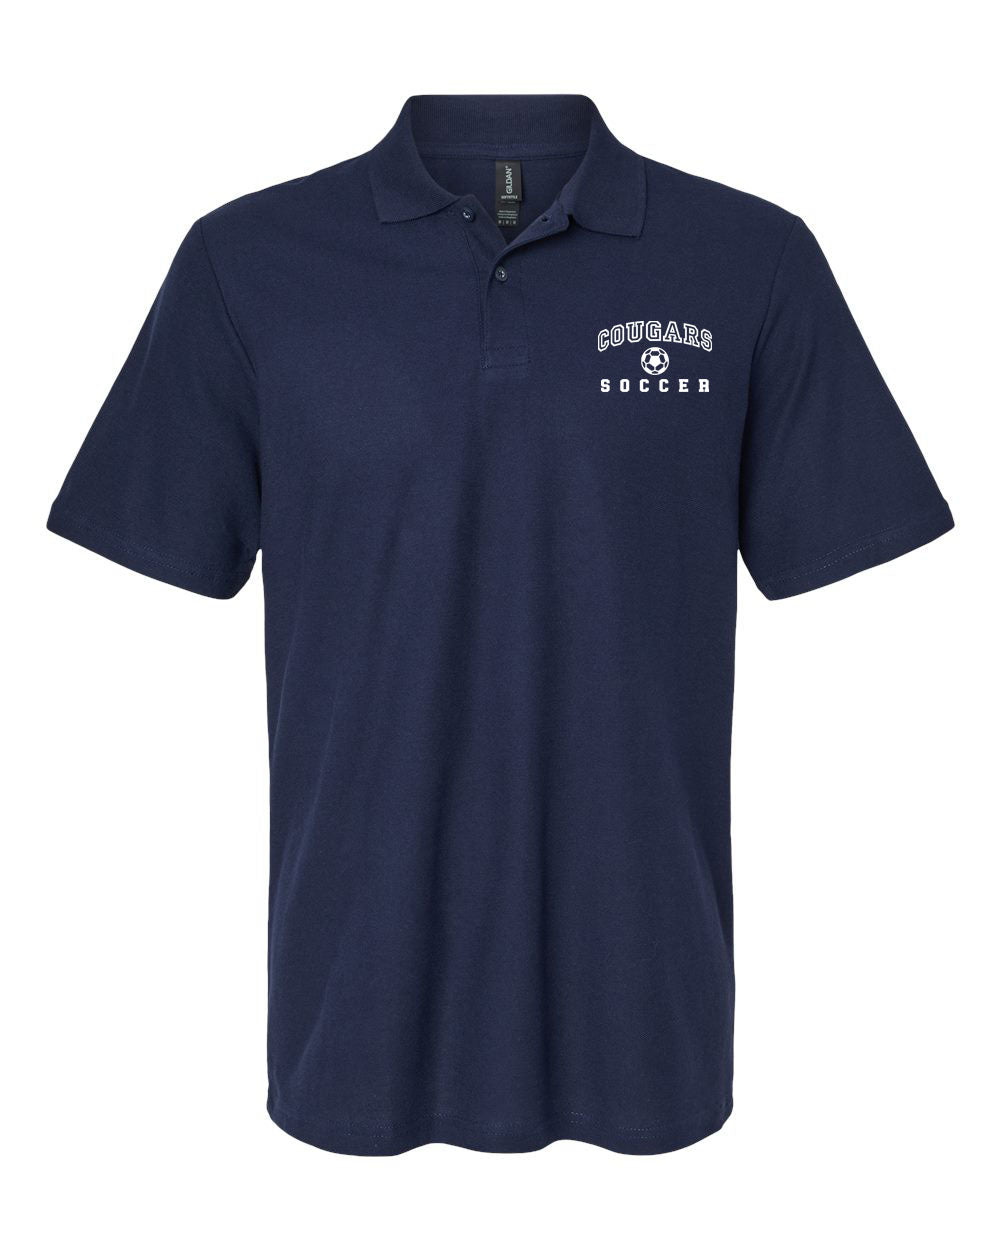 Kittatinny Soccer Design 1 Polo T-Shirt